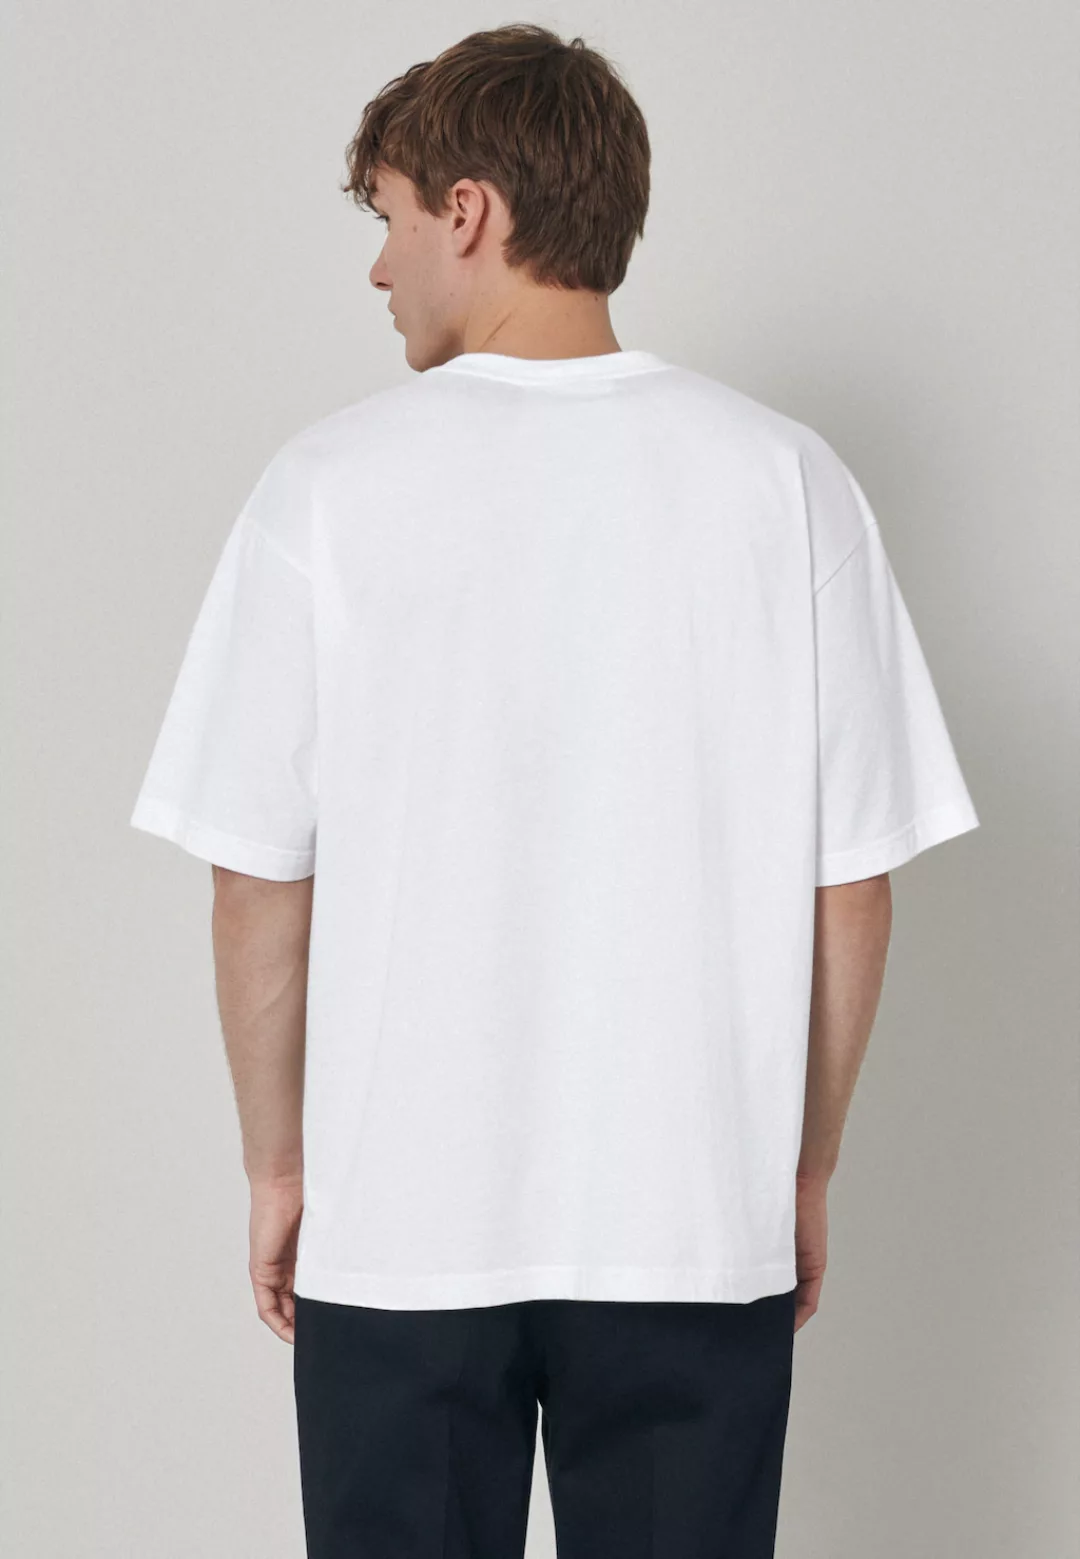 studio seidensticker T-Shirt "Studio", Kurzarm Rundhals Uni günstig online kaufen